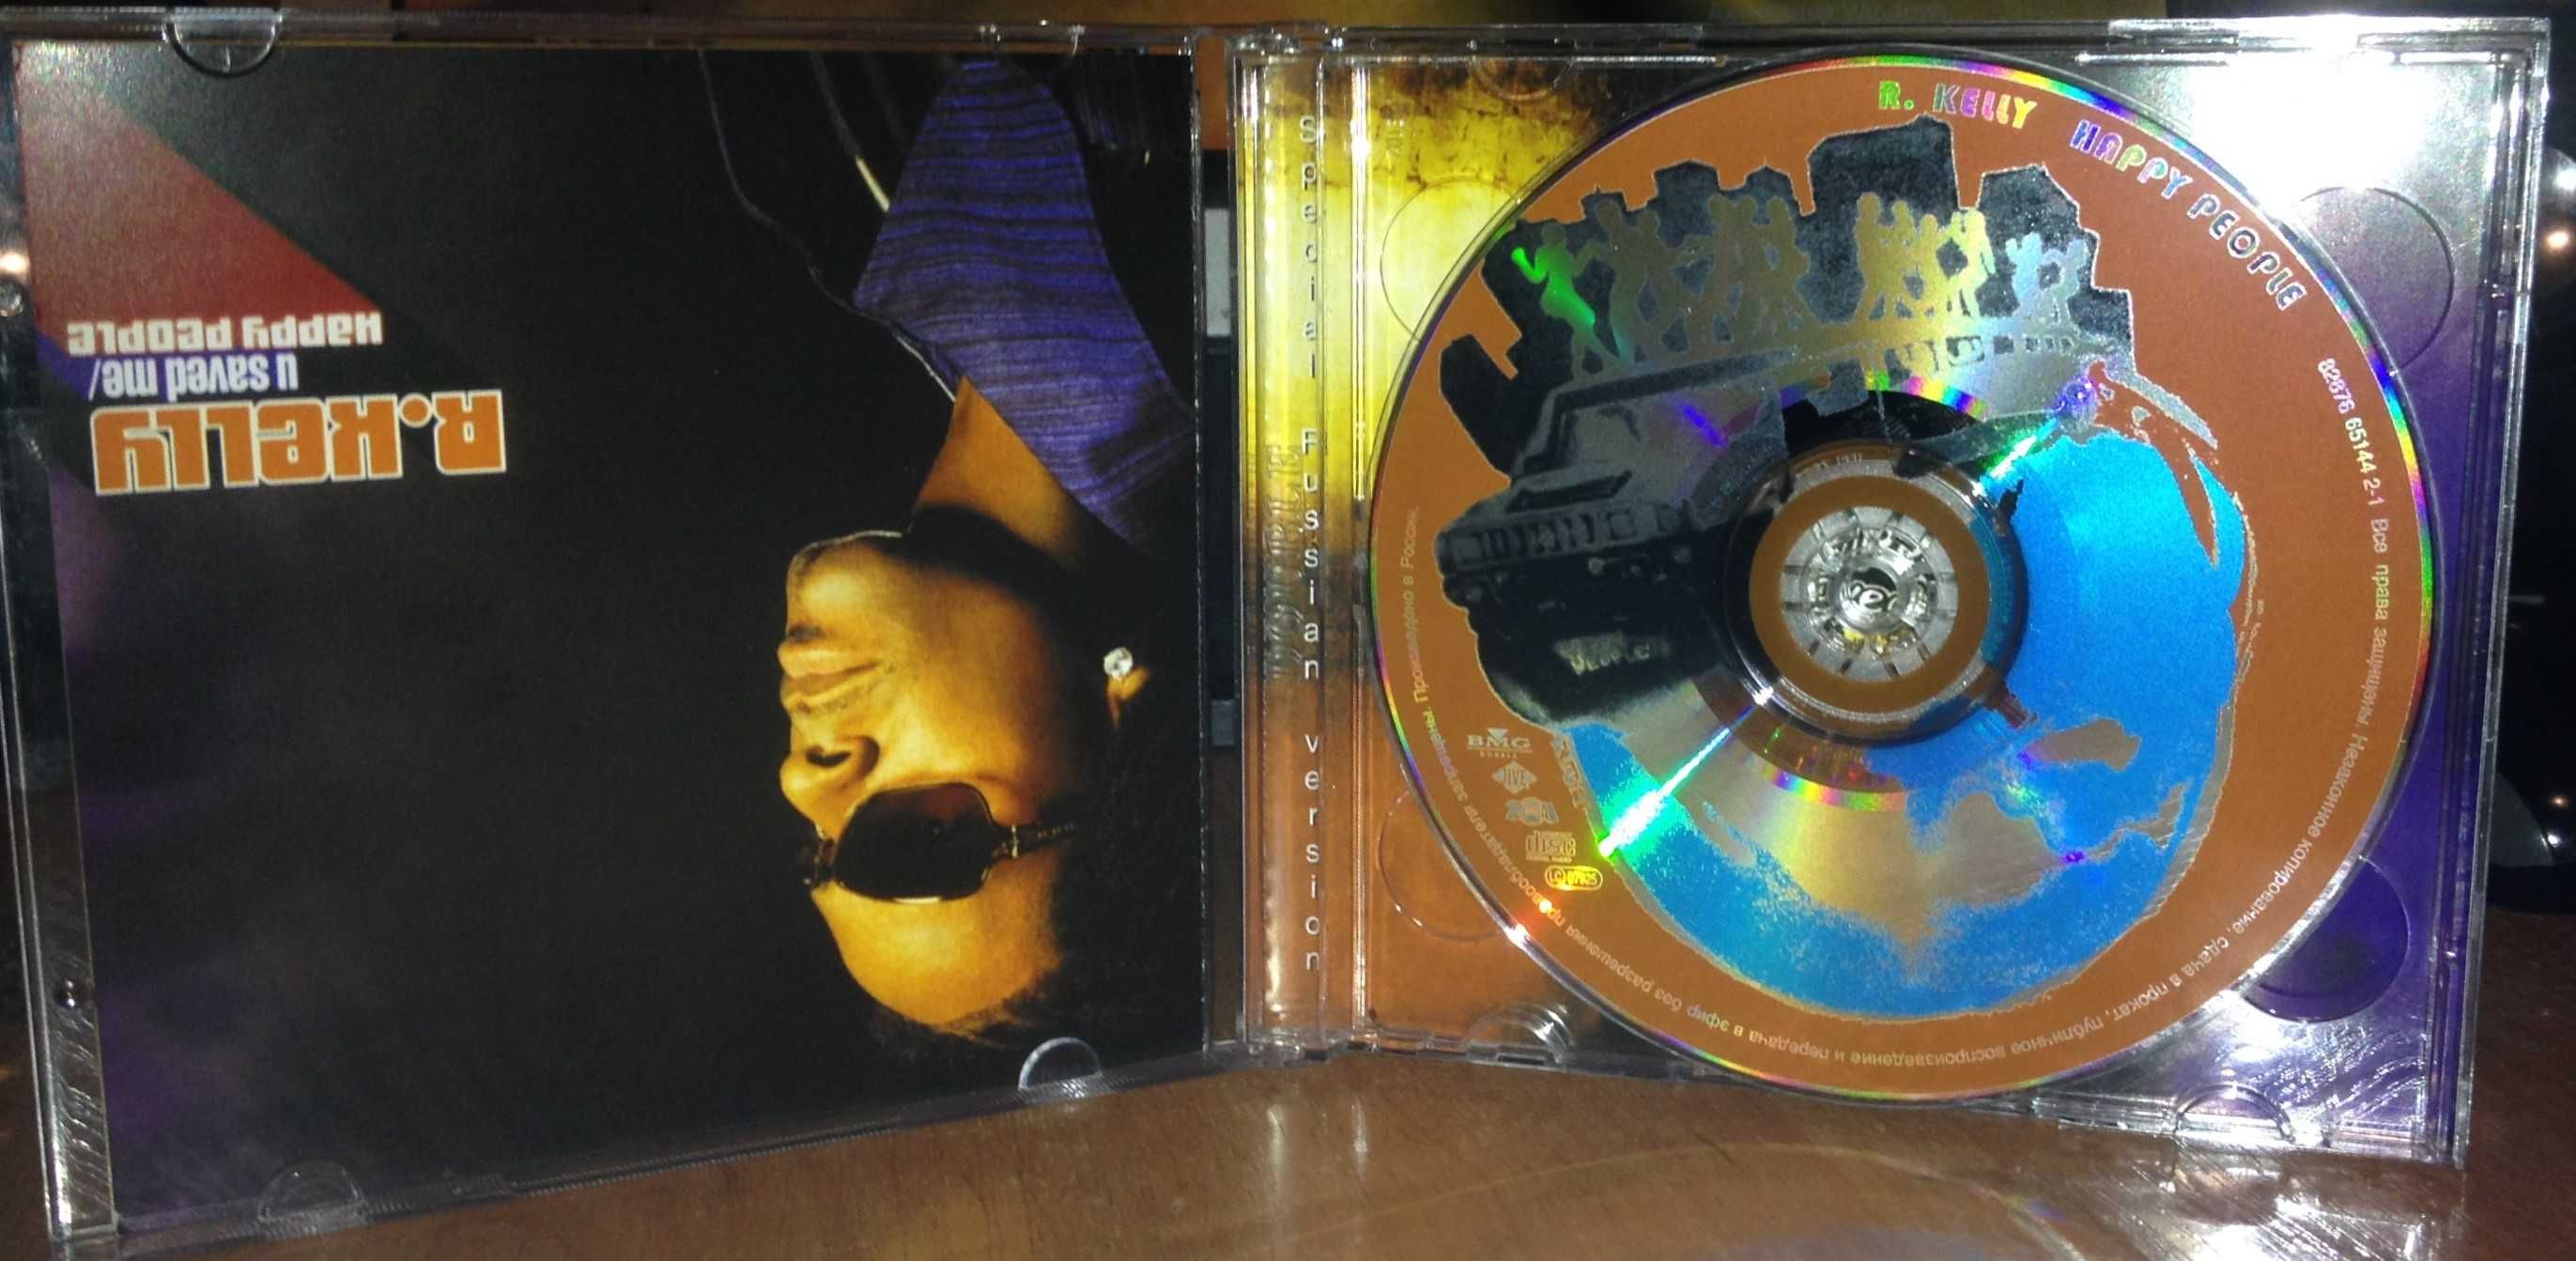 R. Kelly "Happy People / U Saved Me" (2 CD)